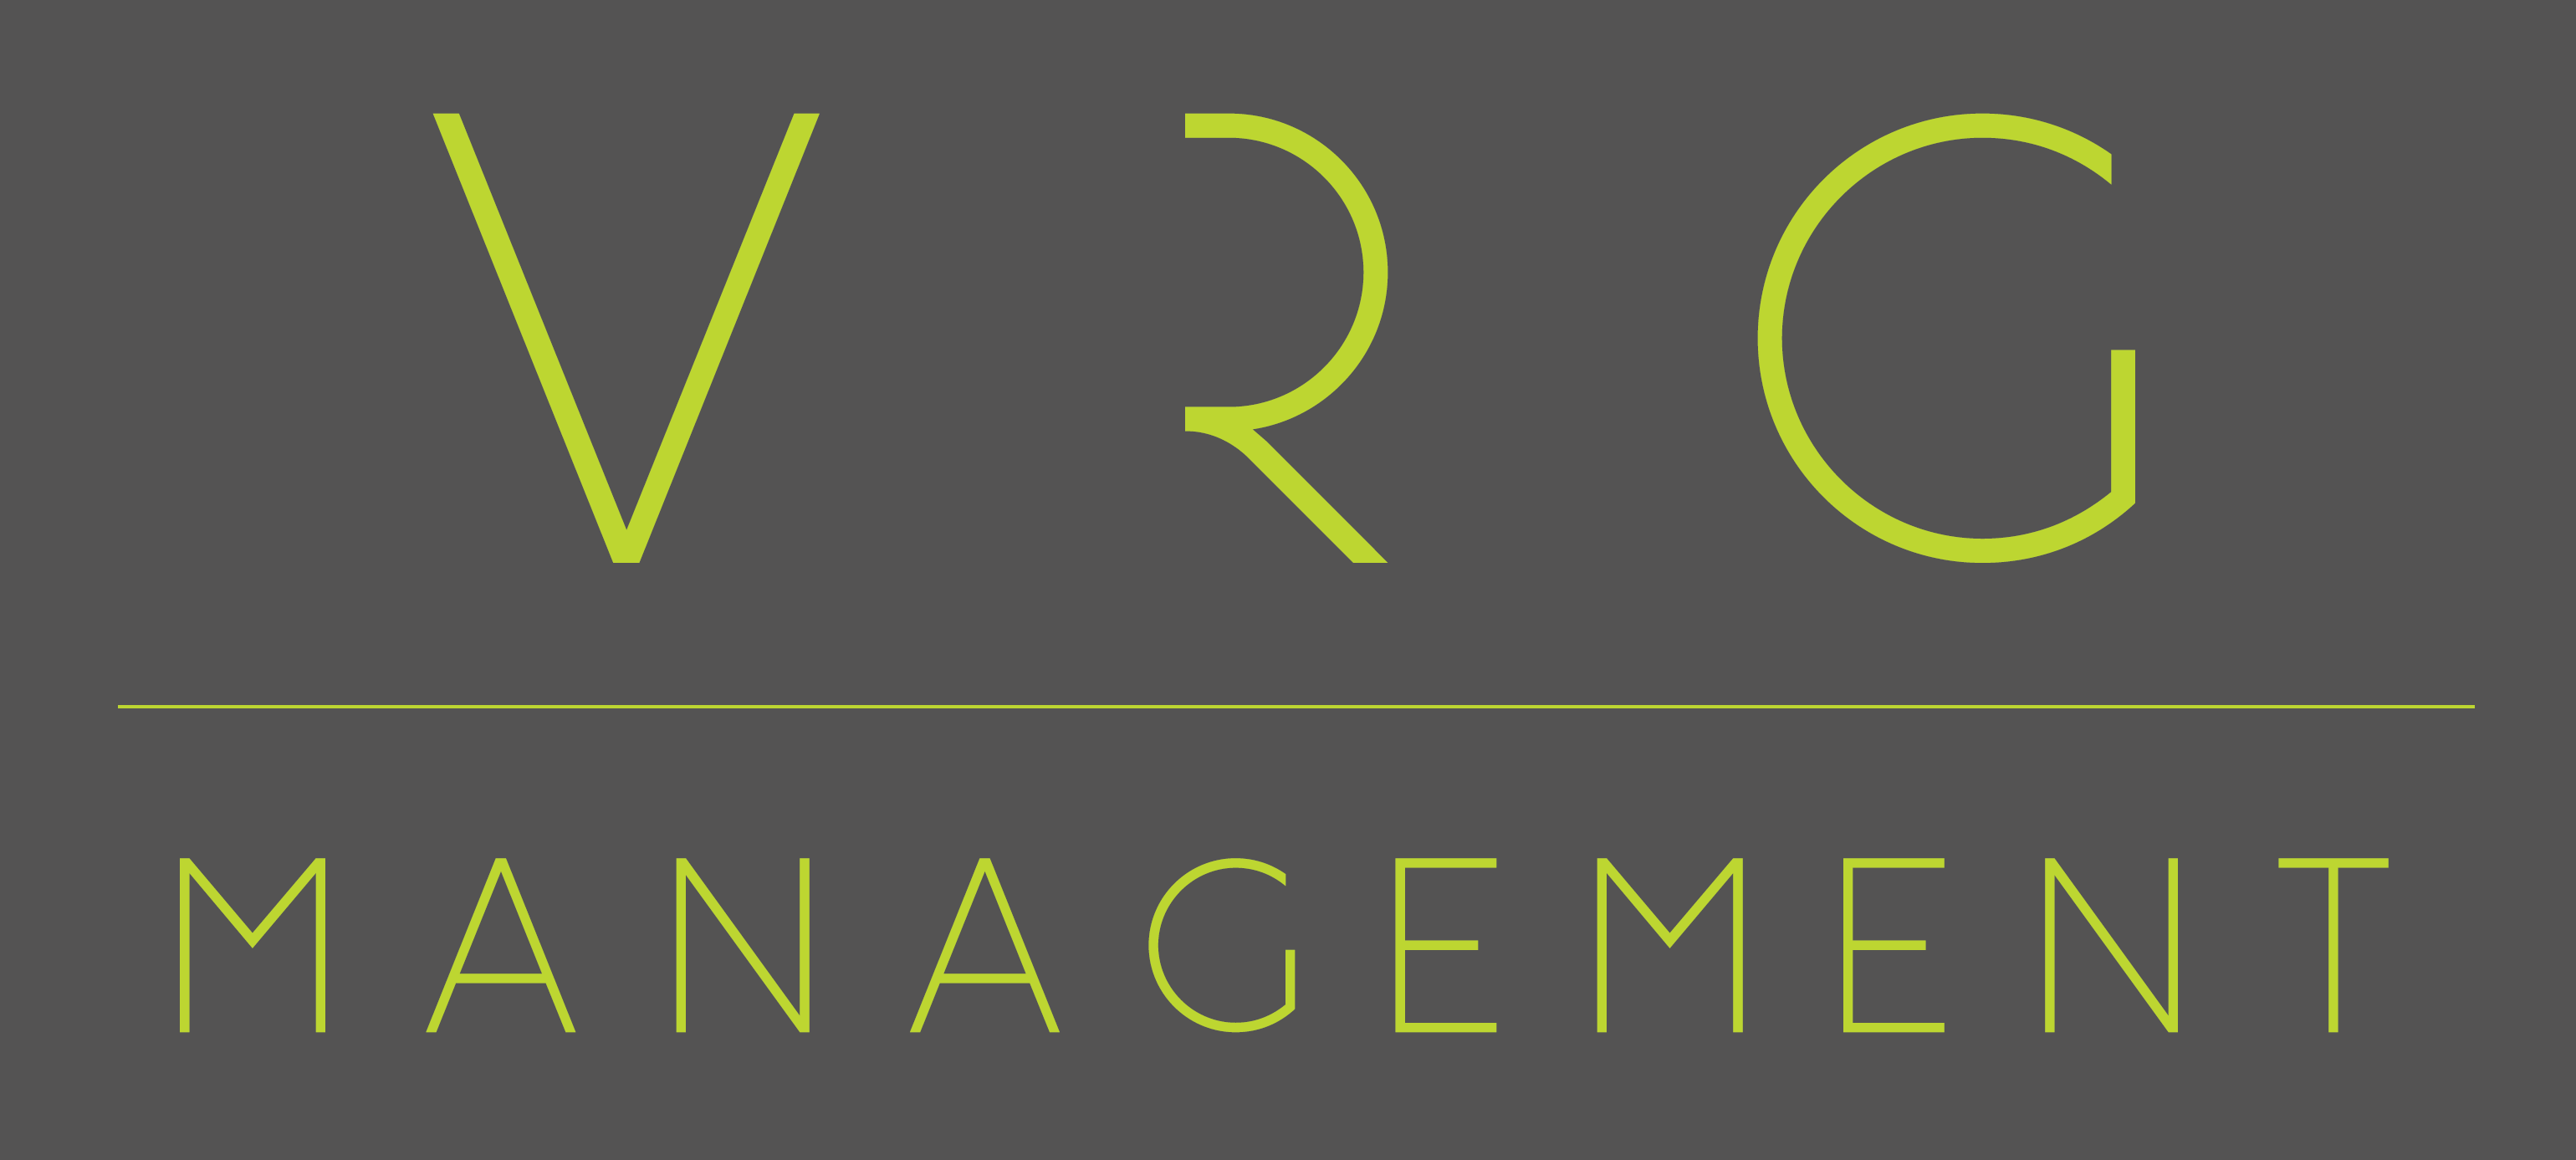 VRG Management